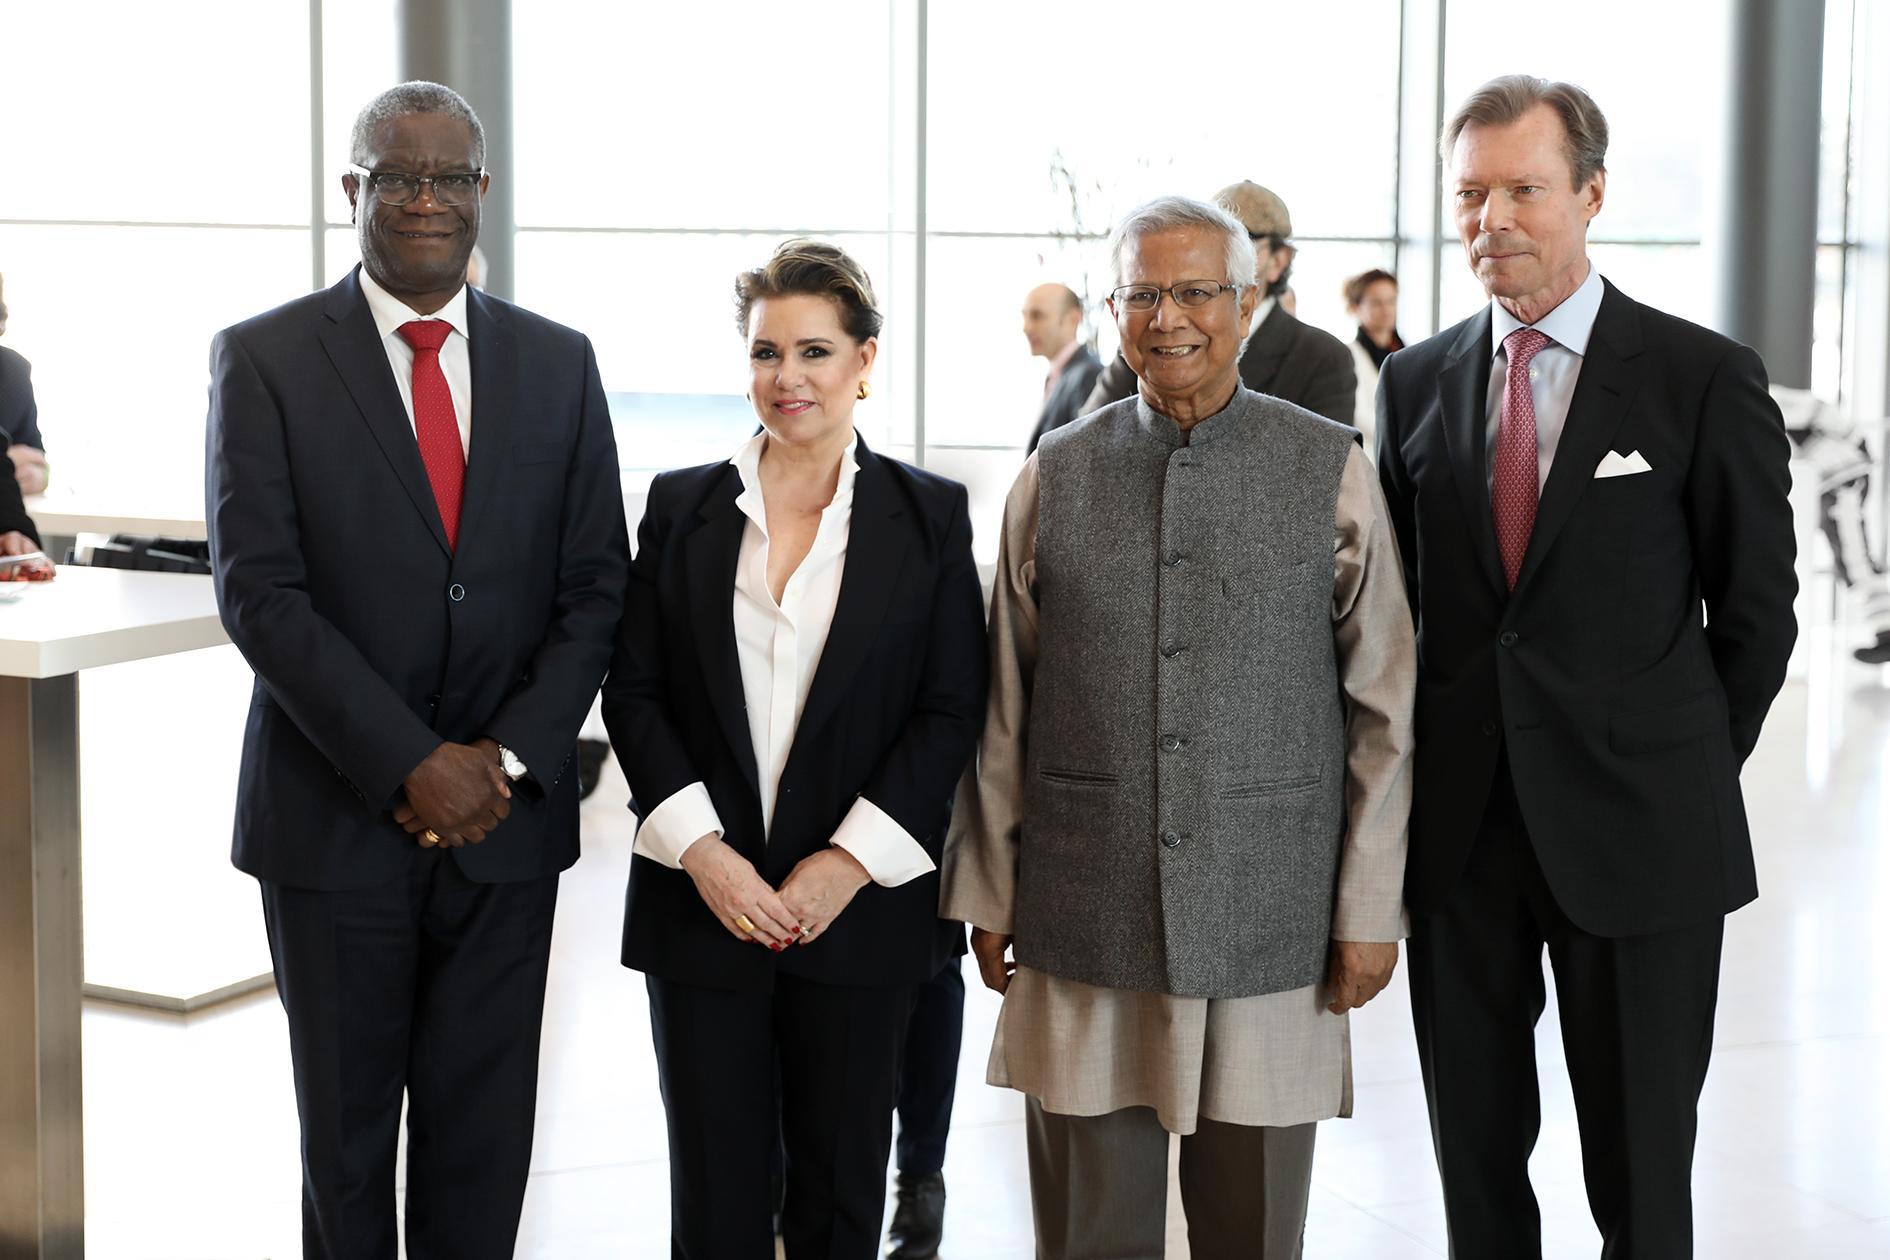 Le Couple grand-ducal accompagné du Dr Denis Mukwege, fondateur et directeur médical, Hôpital de Panzi, lauréat du prix Nobel de la Paix 2018 et du Professeur Muhammad Yunus, Fondateur, Grameen Bank, lauréat du Prix Nobel de la Paix 2006.
